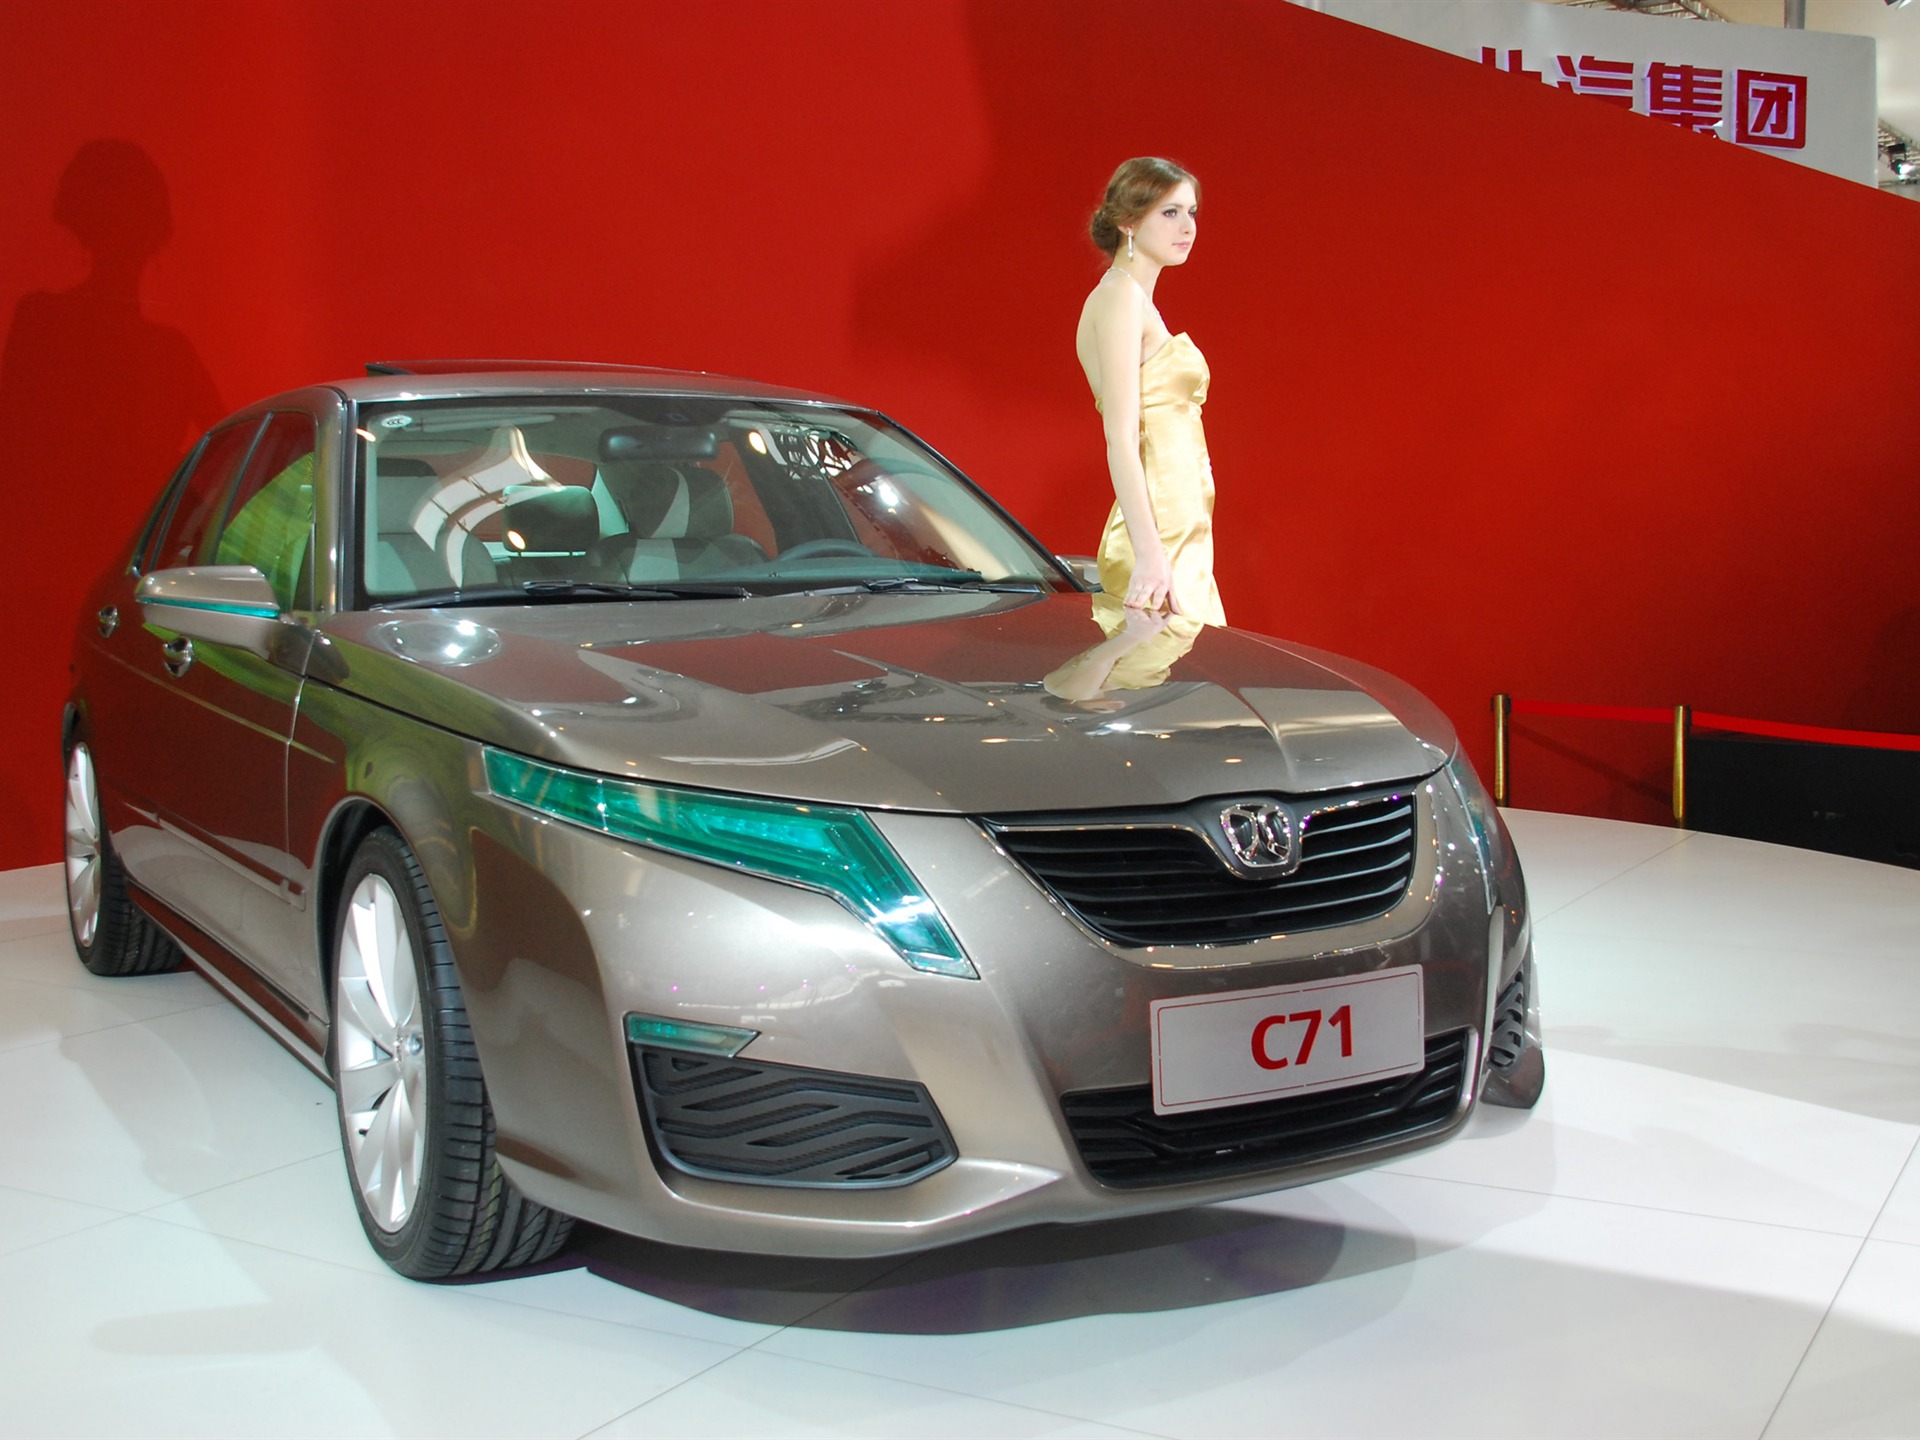 2010北京国际车展(一) (z321x123作品)14 - 1920x1440